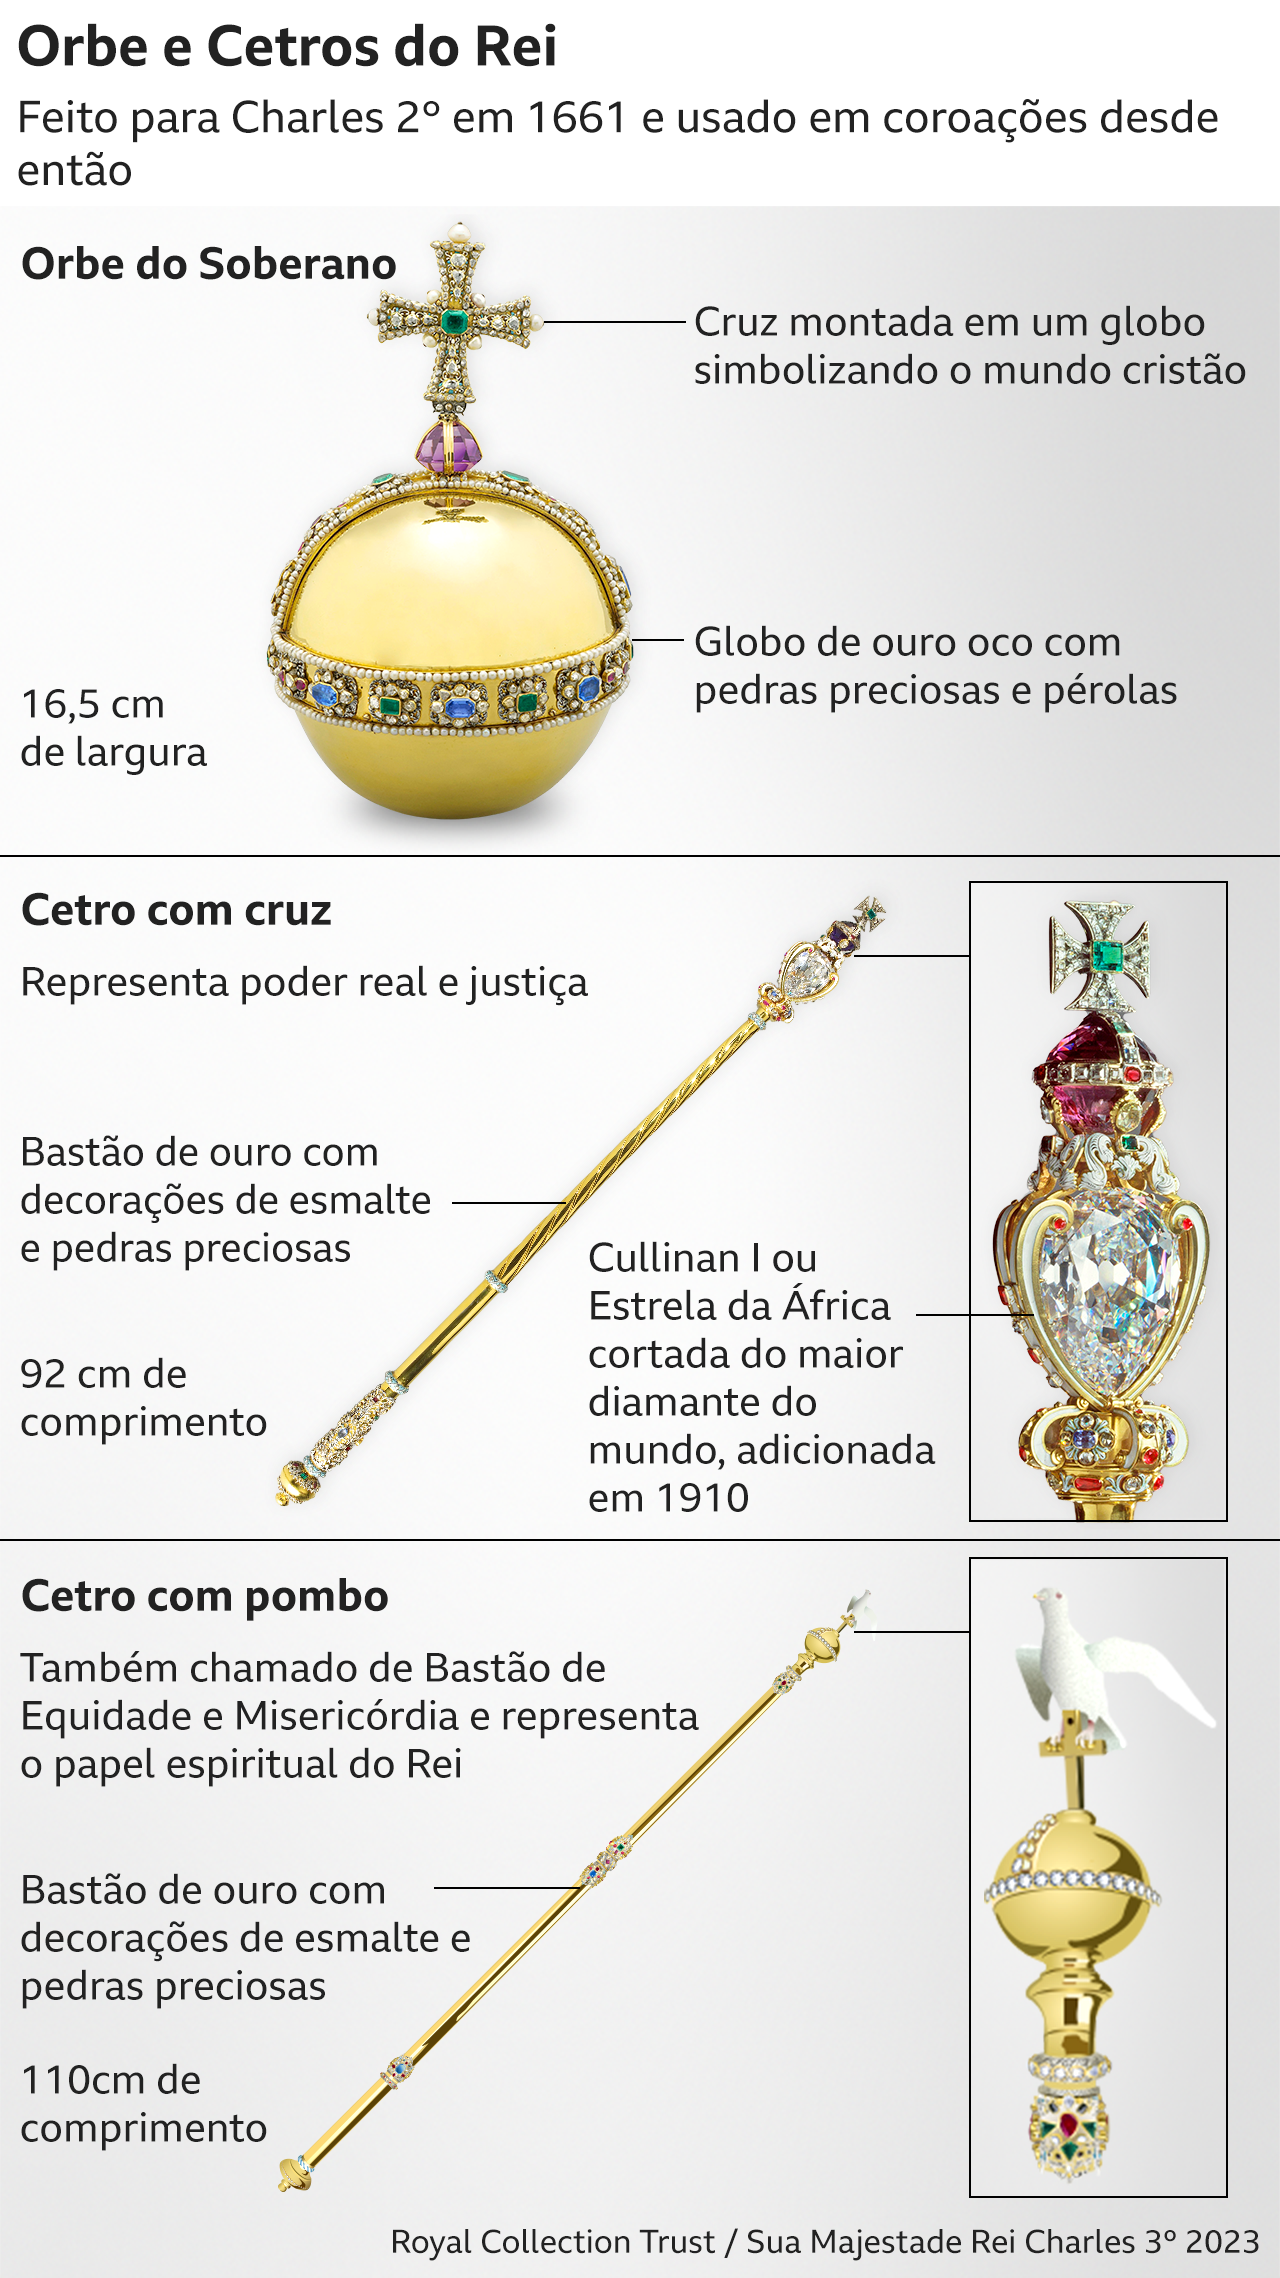 Relíquias cerimoniais da coroação